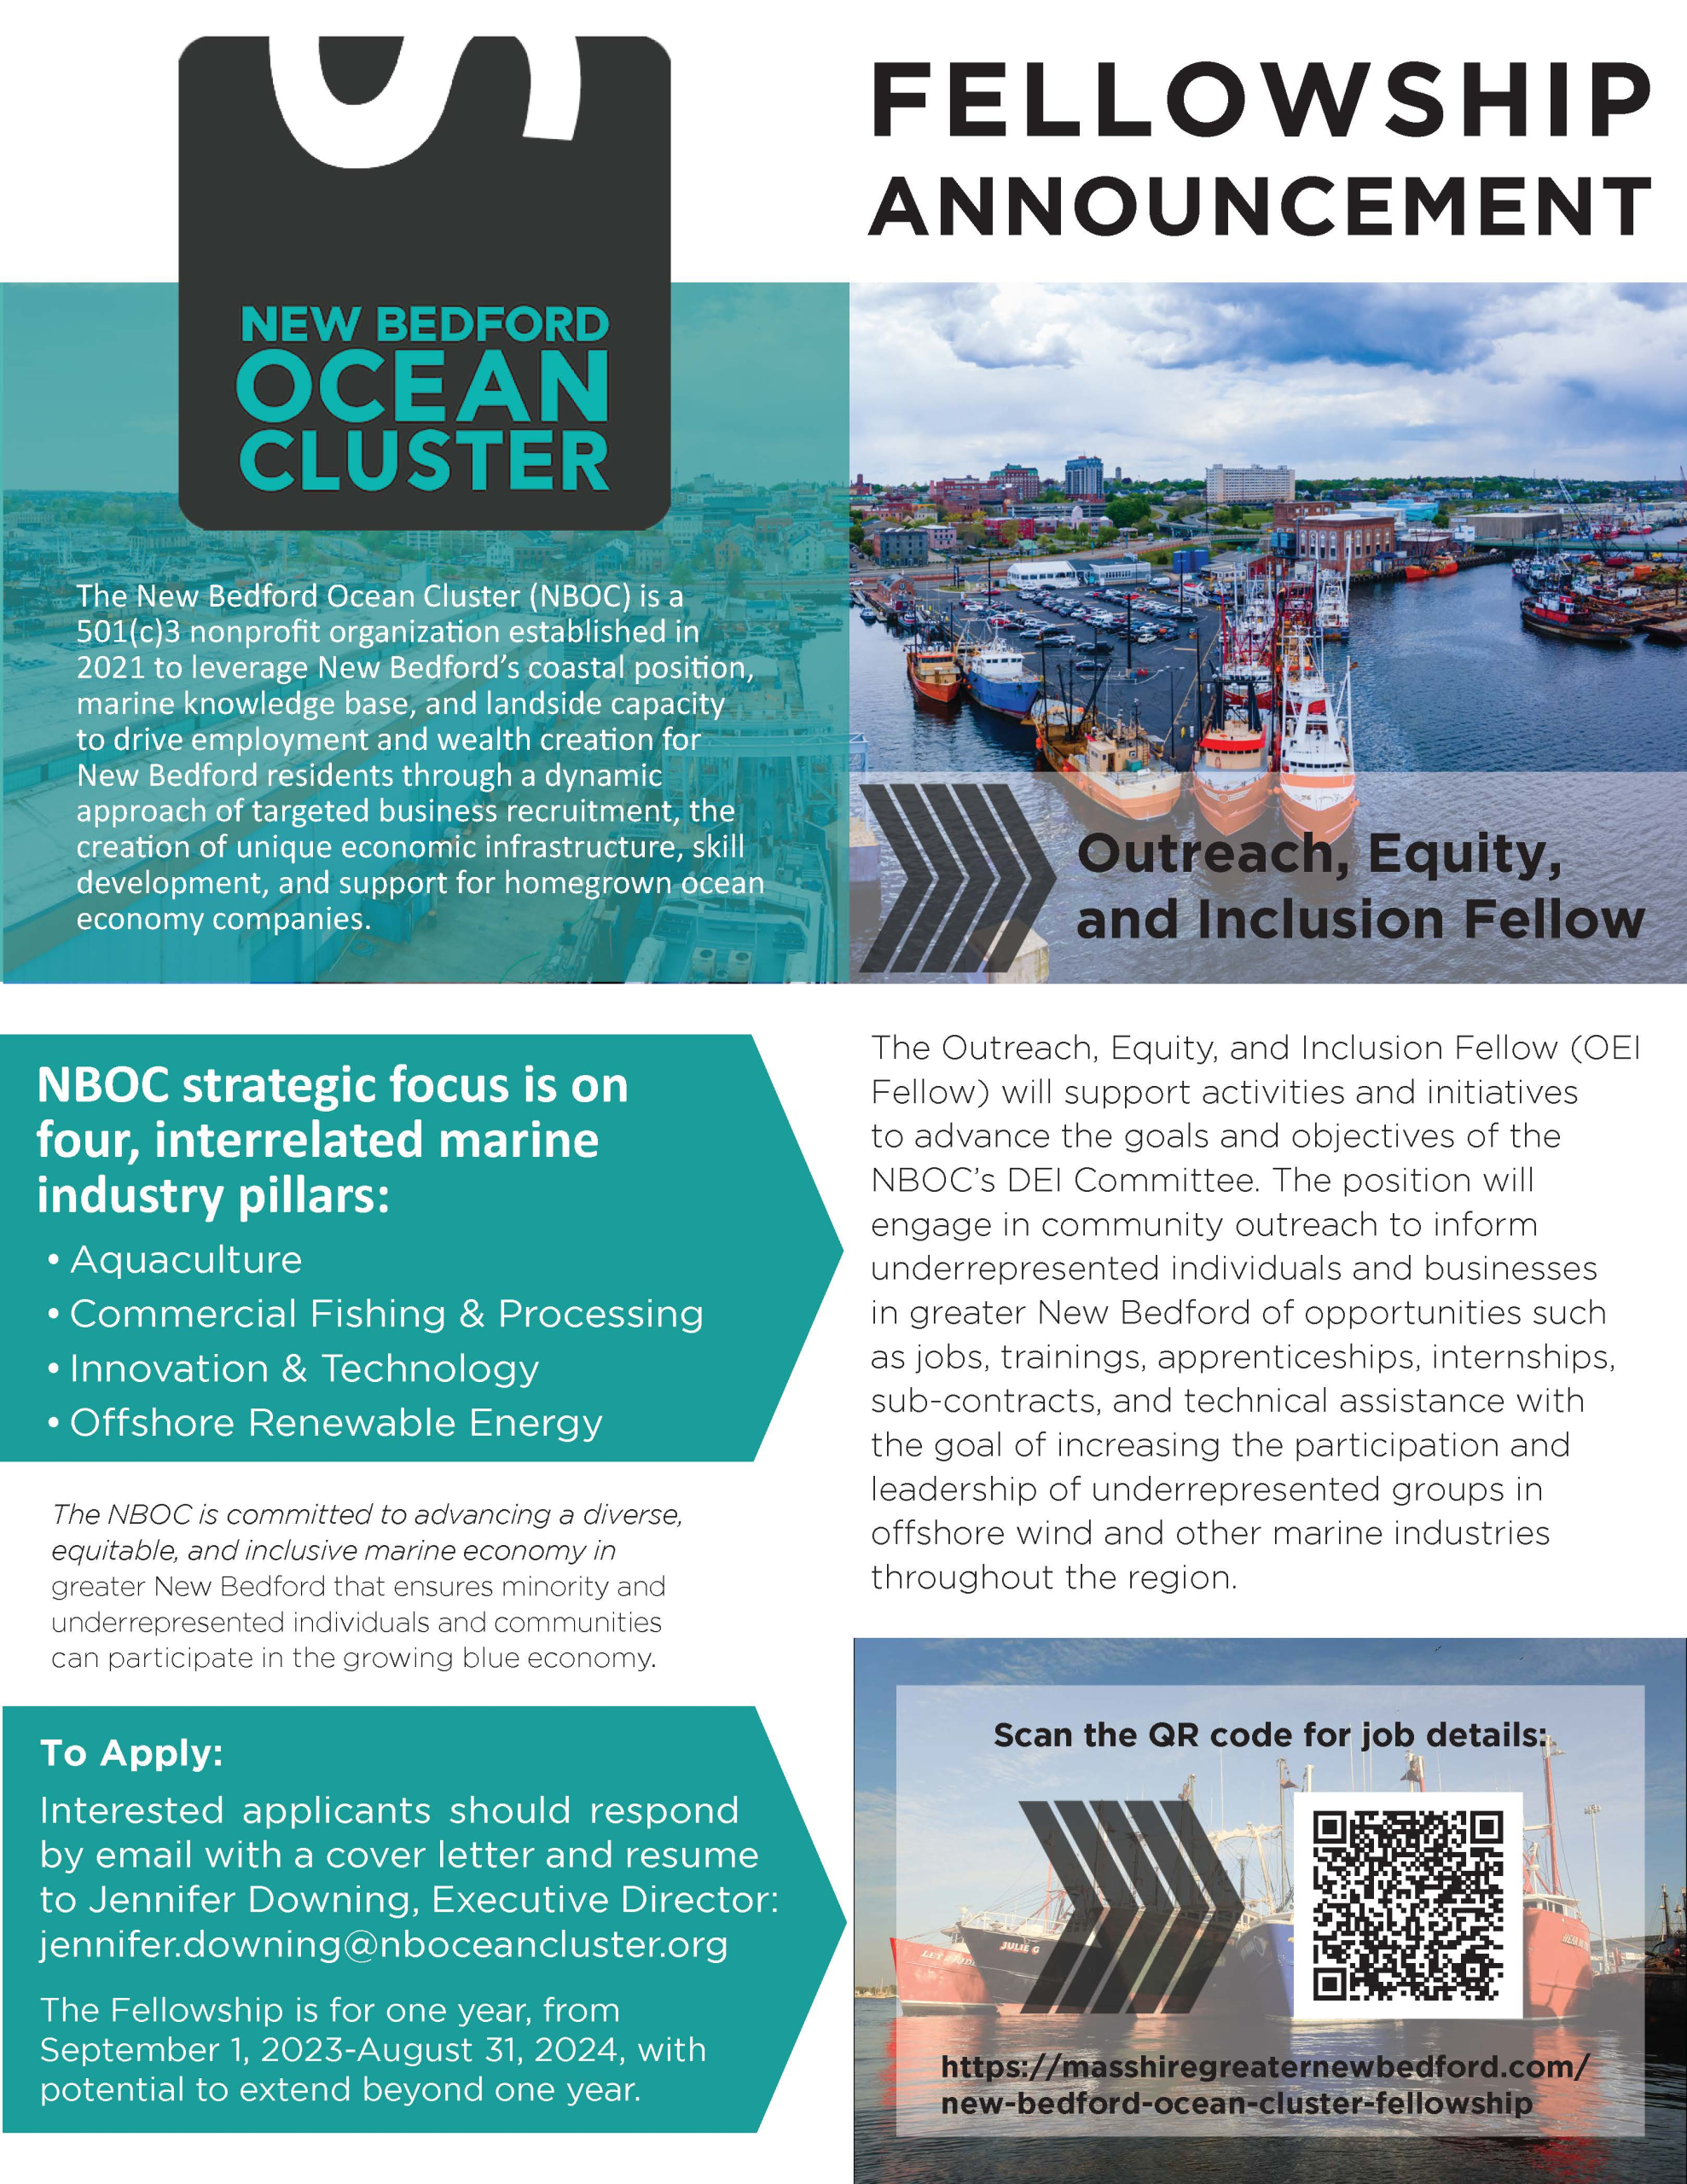 New Bedford Ocean Cluster Fellowship Announcement